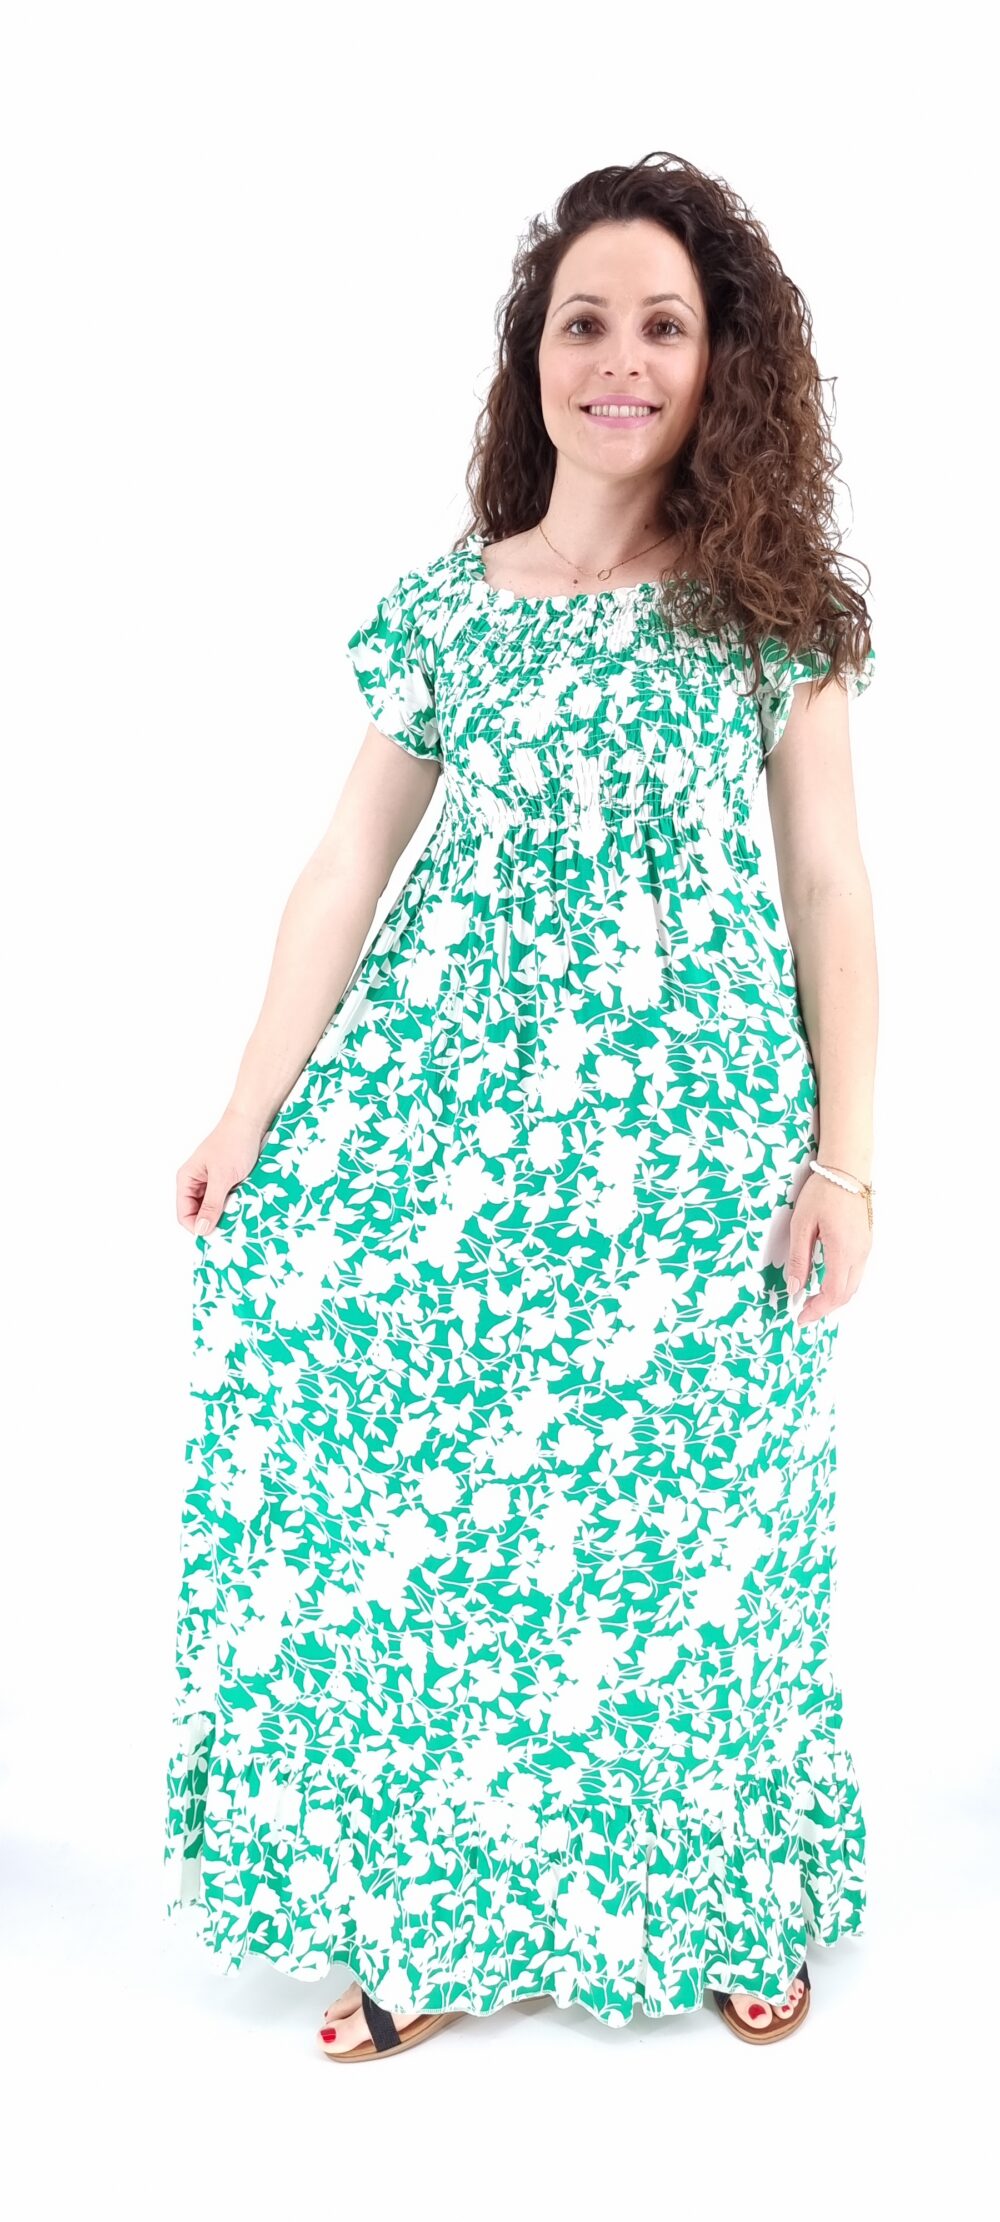 Φόρεμα μακρύ φλοράλ με σφιγγοφωλιά άσπρο πράσινο